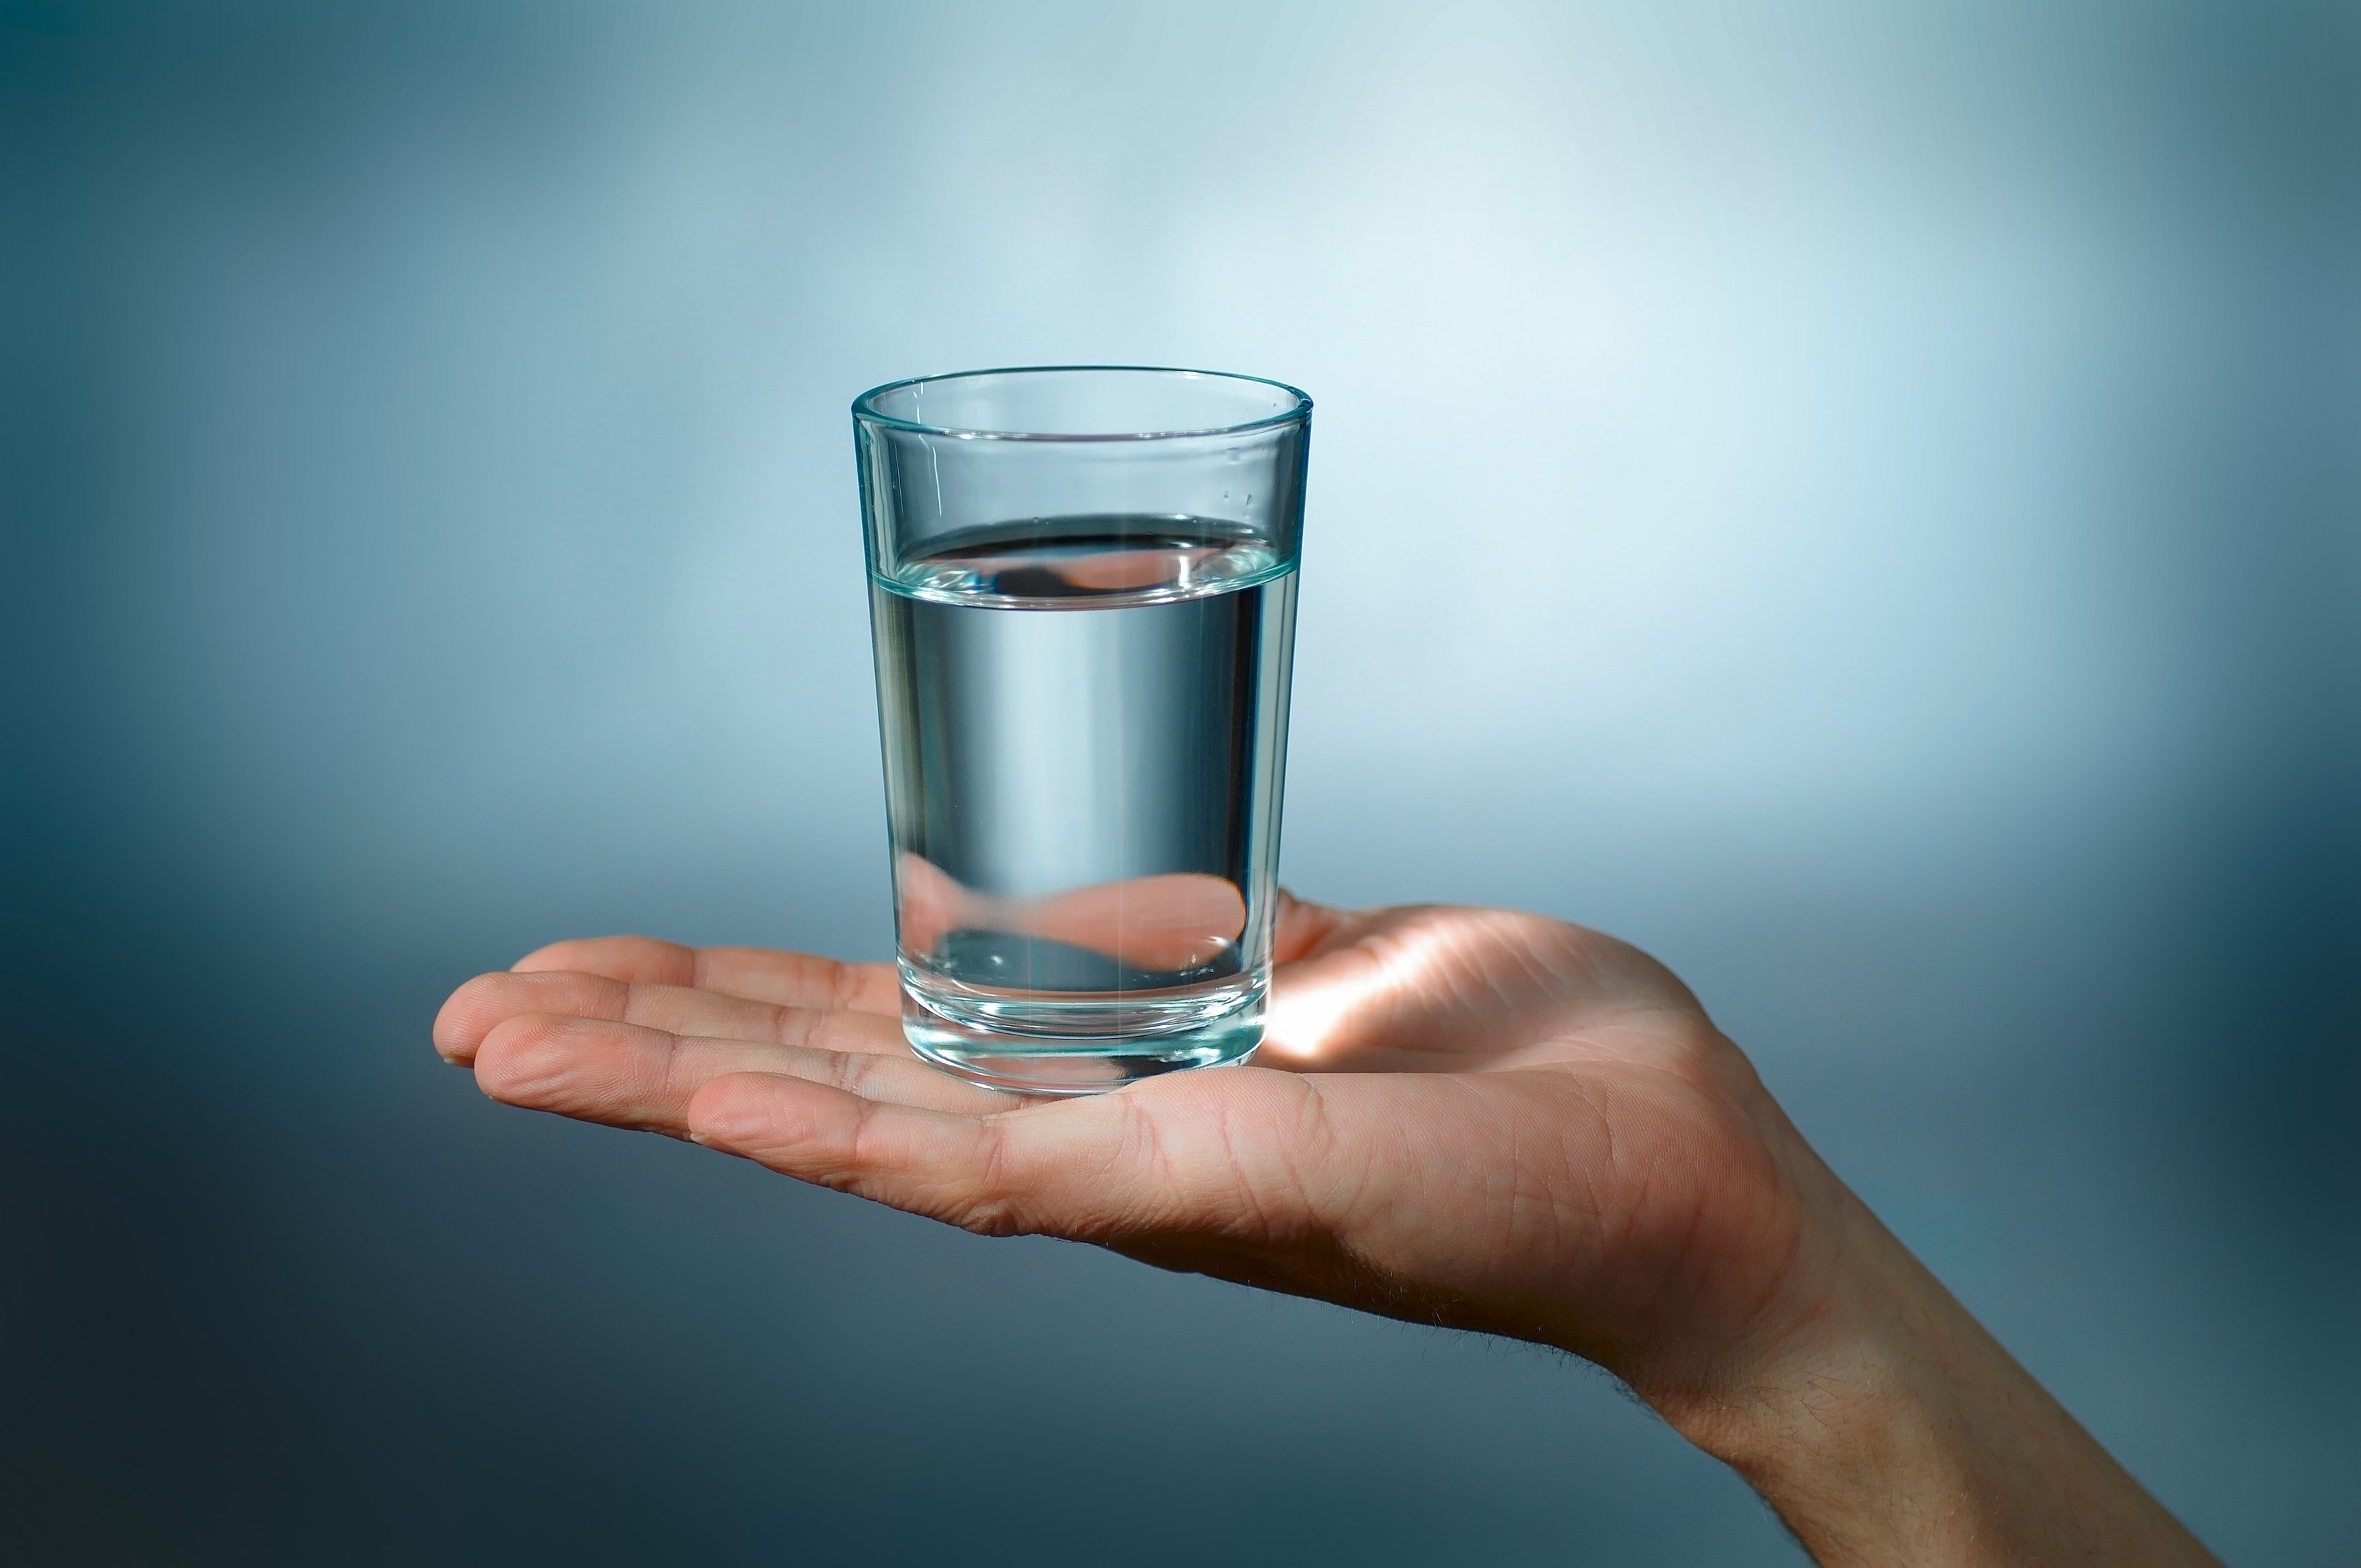 Налить в стакан половину воды. Стакан воды. Чистая вода. Полный стакан воды. Стакан воды в руке.